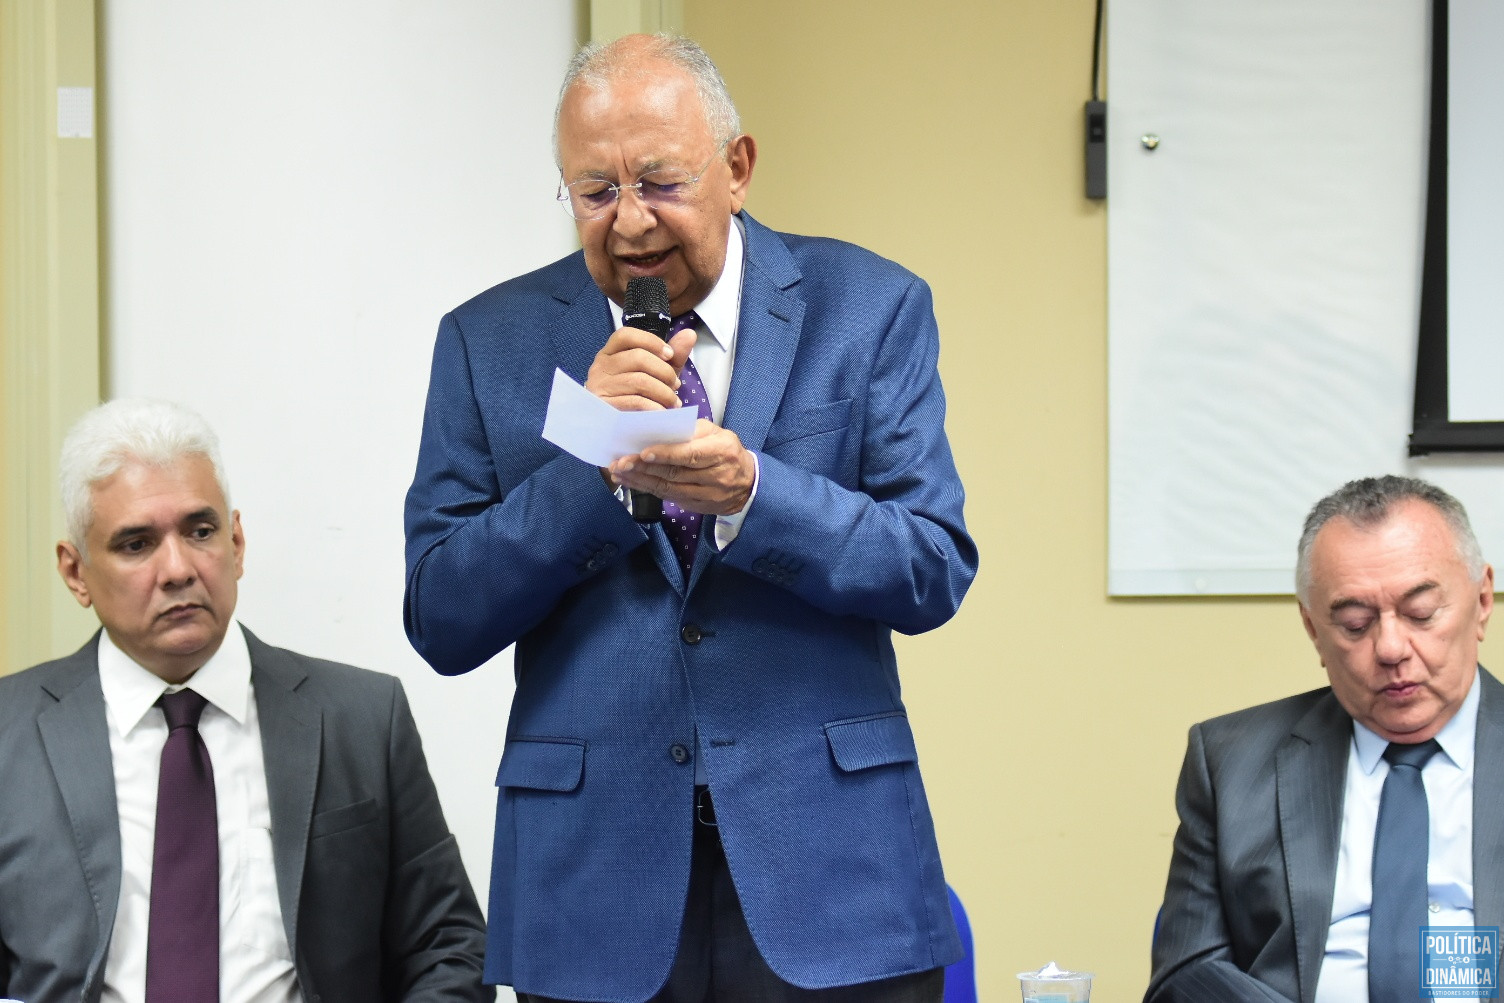 O prefeito de Teresina, Doutor Pessoa, durante evento no TCE-PI (foto: Jailson Soares | PD)